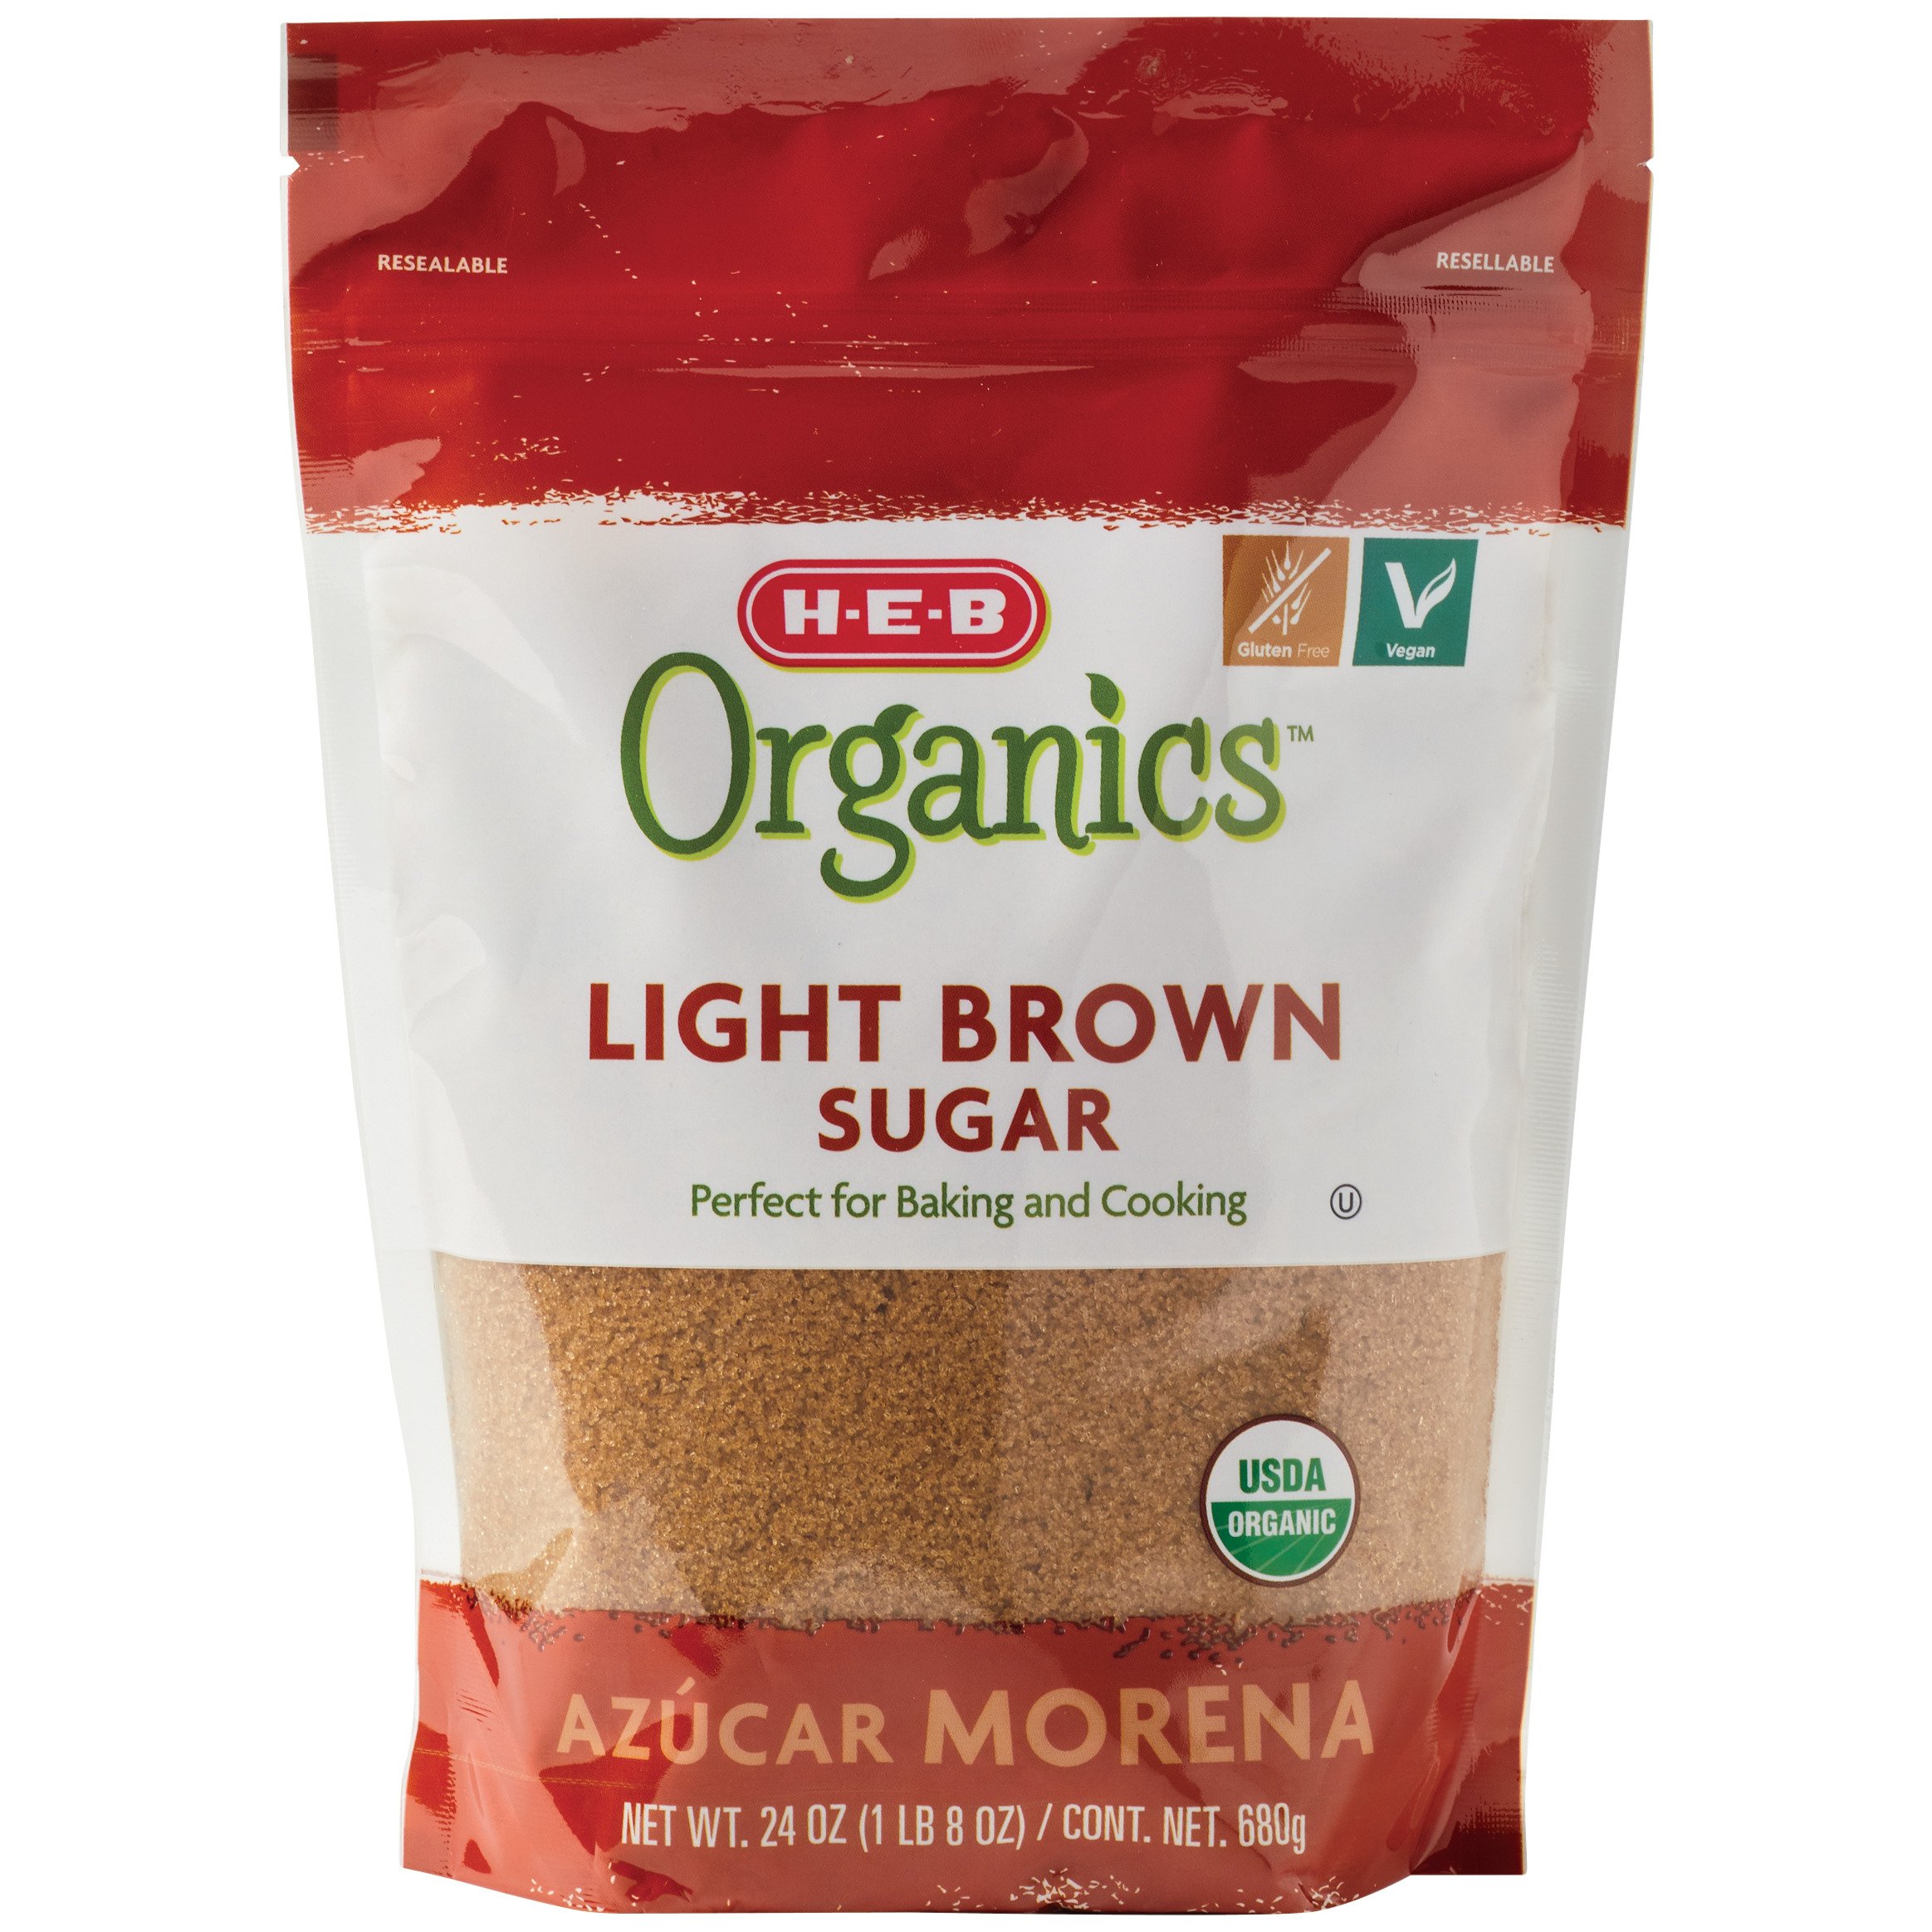 Organics Brown Sugar - Sugar at H-E-B